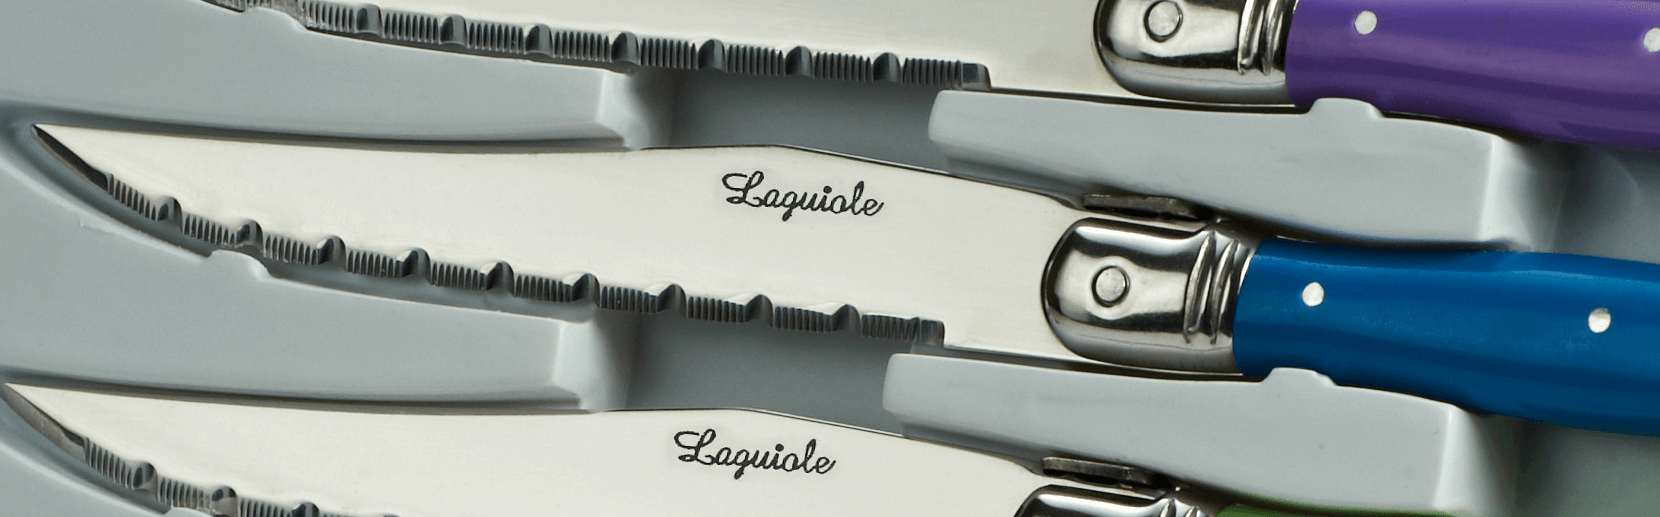 Benoit l'Artisan  Coffret de 6 couteaux de table de Laguiole, plein manche  en inox poli